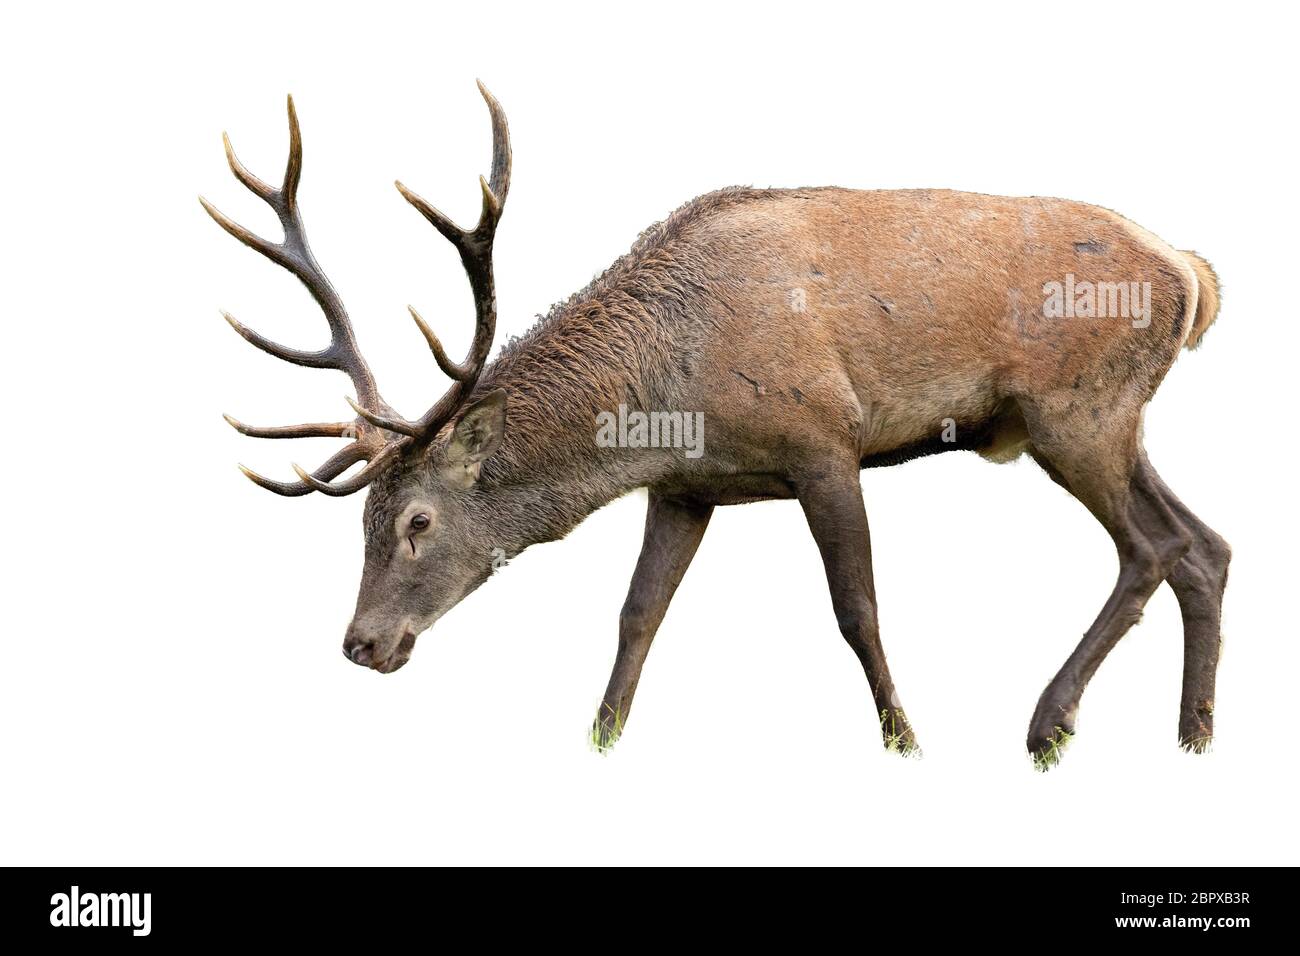 Le pâturage isolé red deer, Cervus elaphus, stag avec bois. Mammal séparés sur fond blanc avec la tête inclinée vers le bas. Banque D'Images